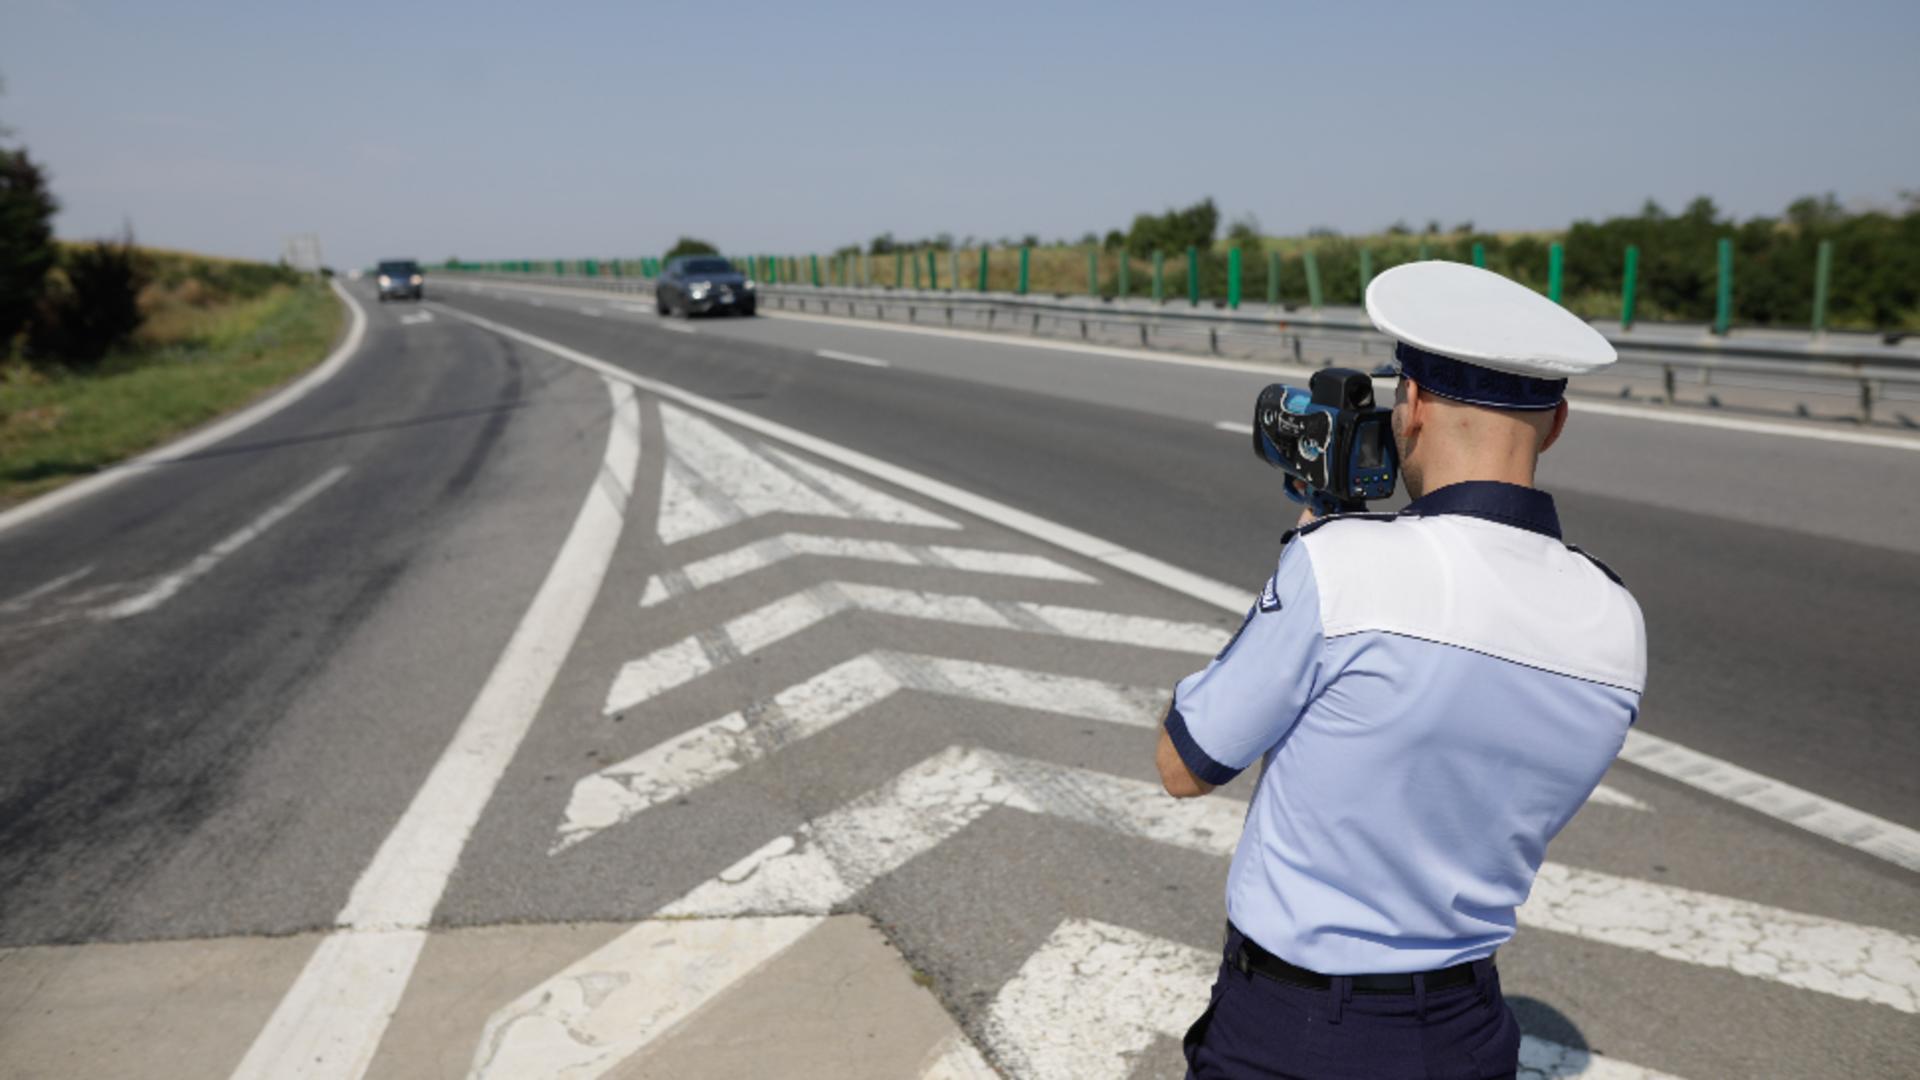 Poliția Rutieră, obligată să anunțe prezența radarelor. Cum pot afla șoferii unde sunt amplasate acestea